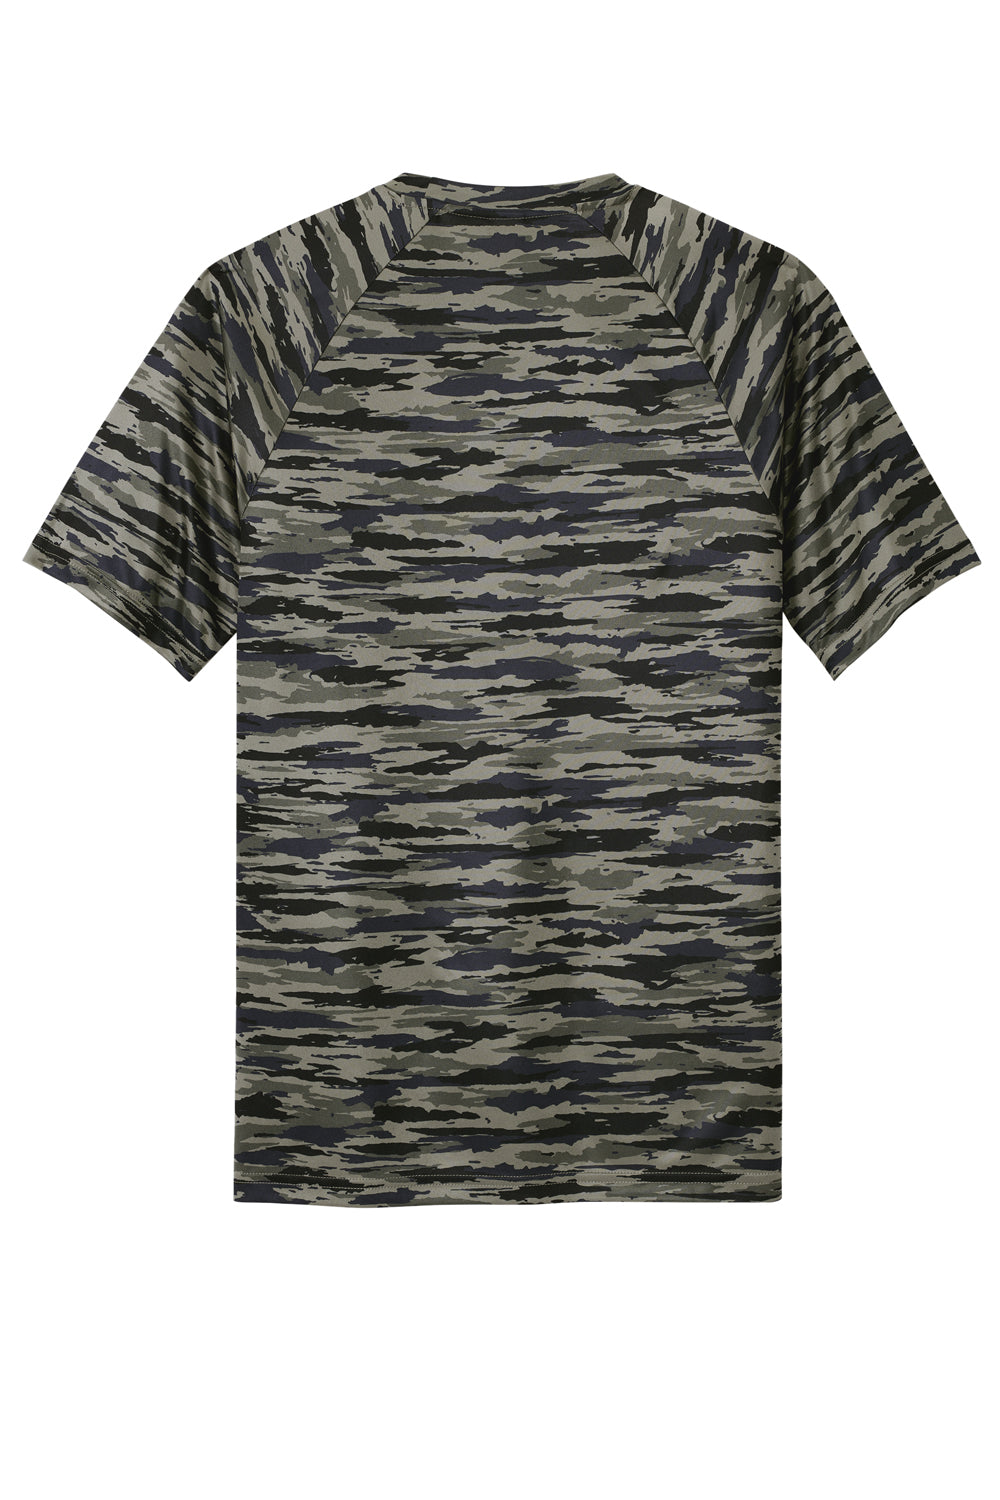 Sport-Tek Mens Drift Camo Short Sleeve Crewneck T-Shirt True Navy Blue Flat Back